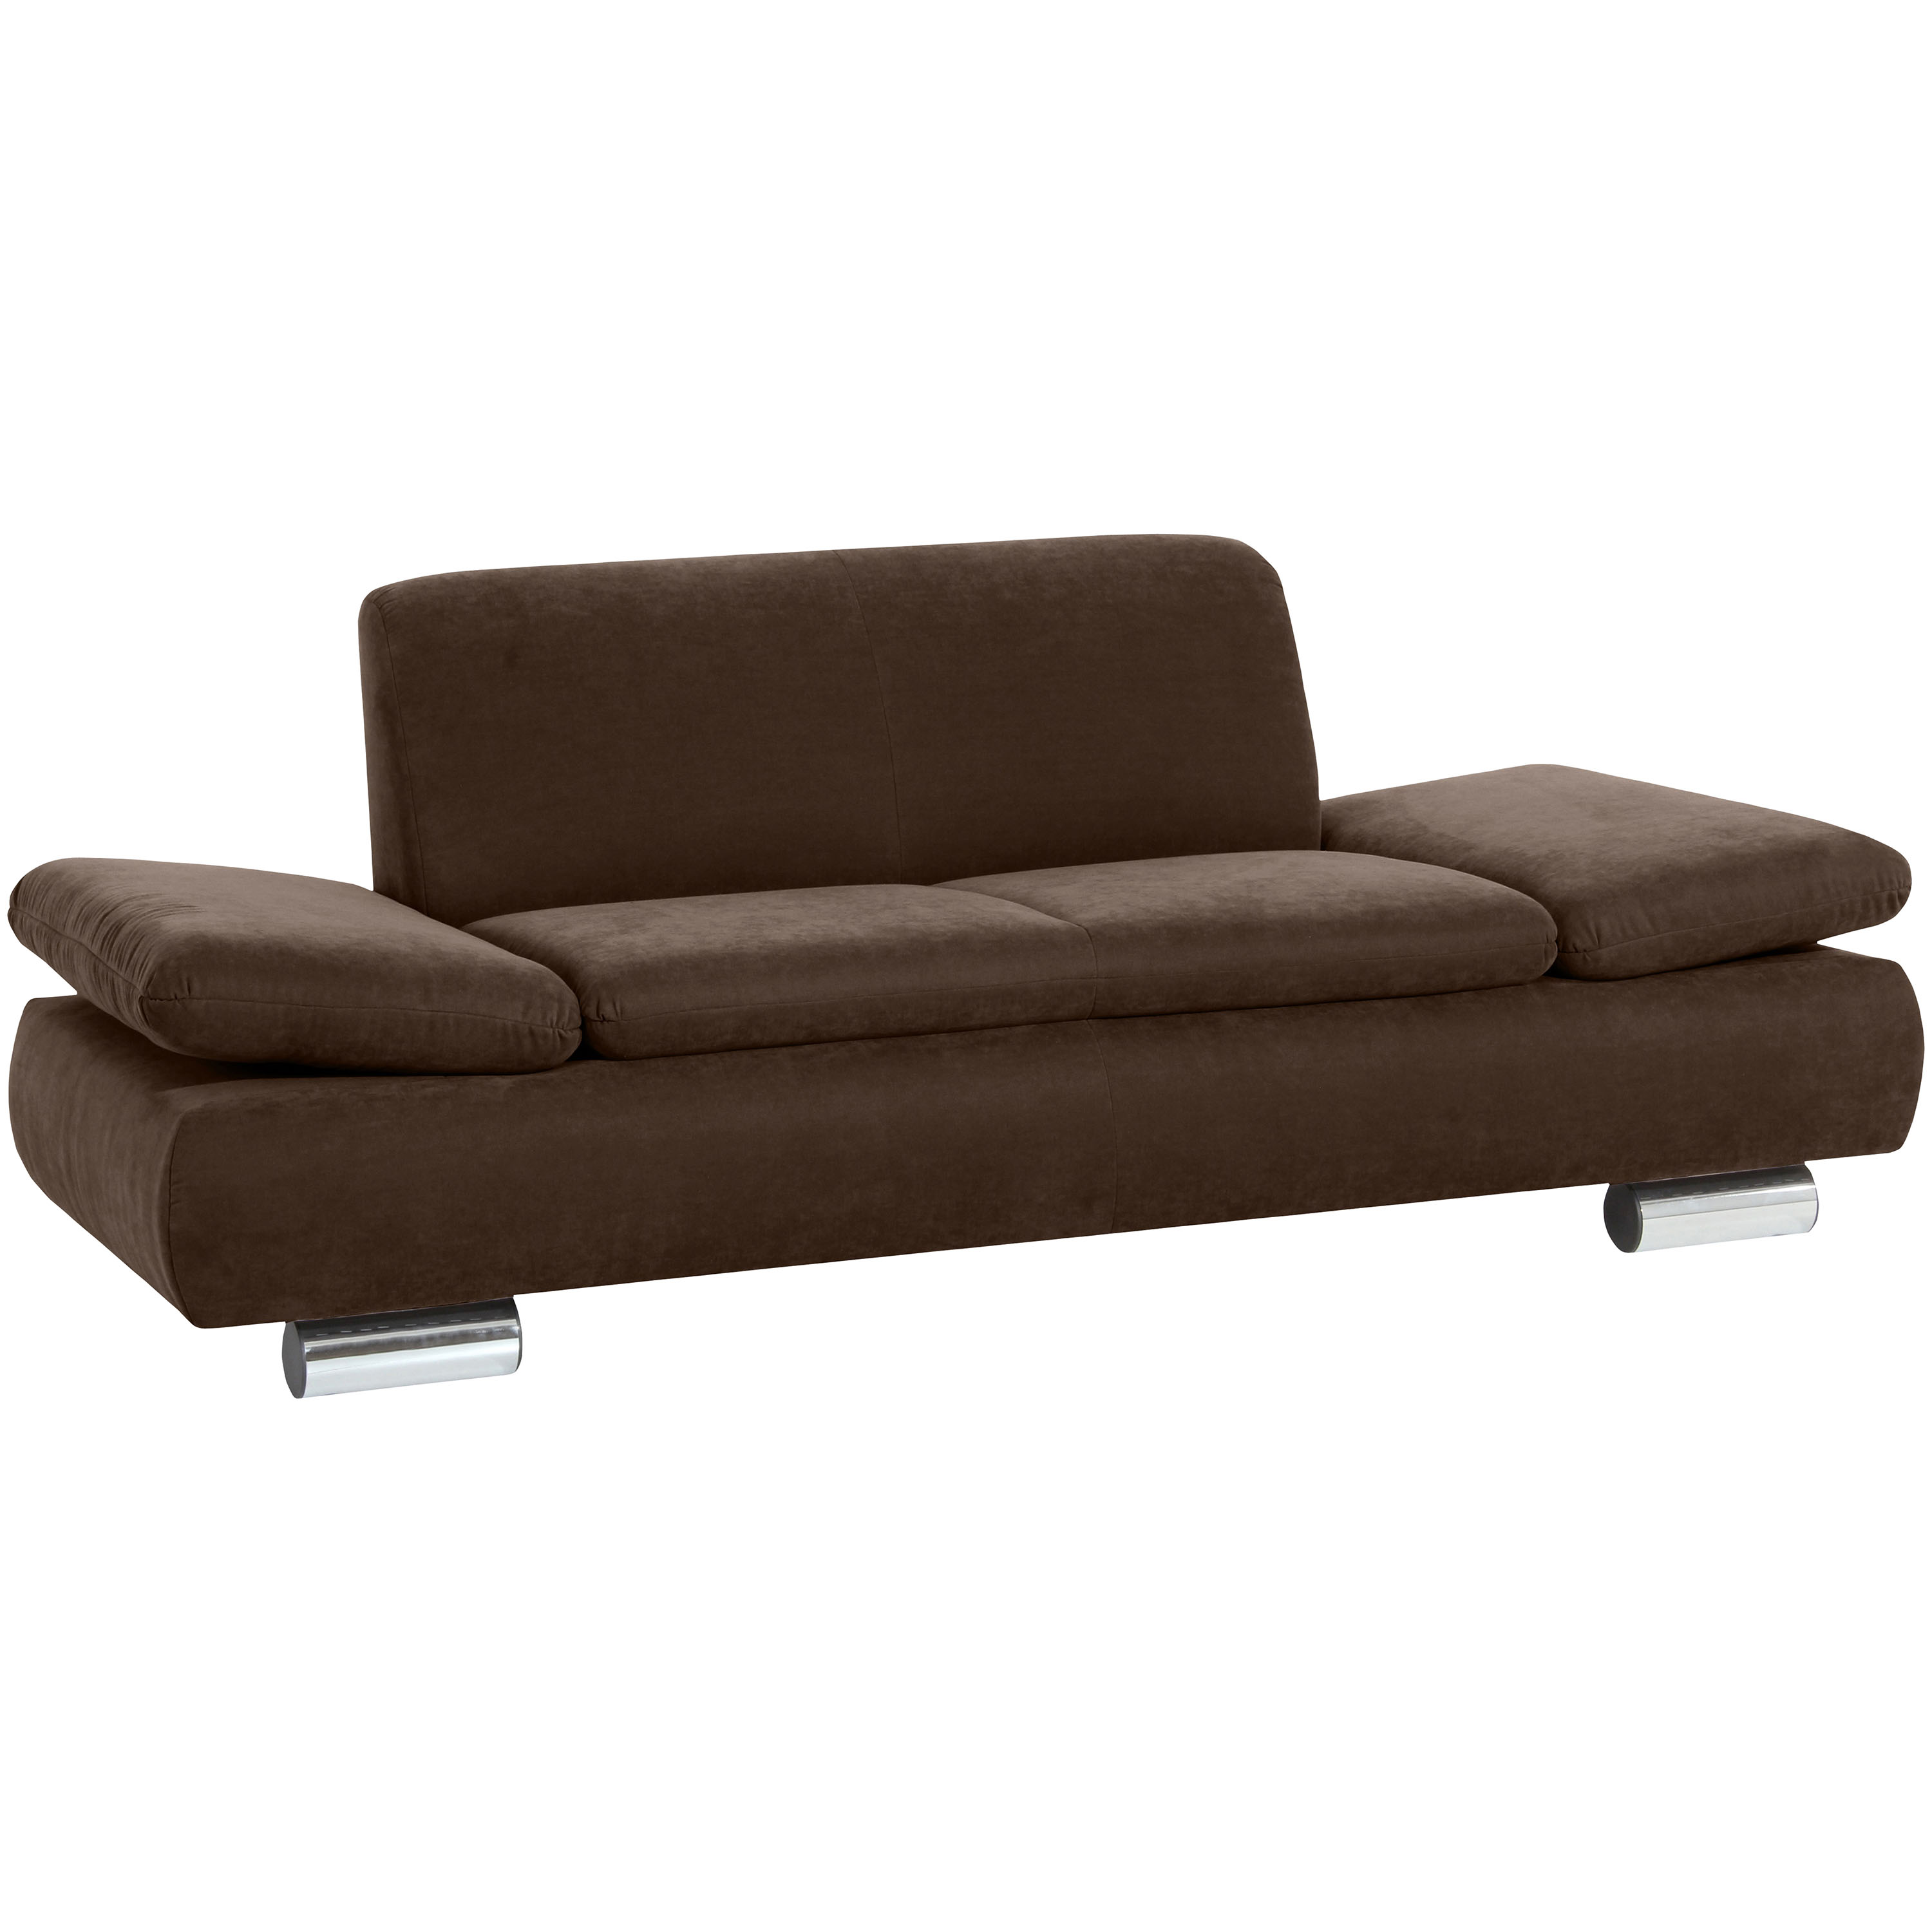 schönes braunes 2-sitzer sofa mit verchromten metallfüssen